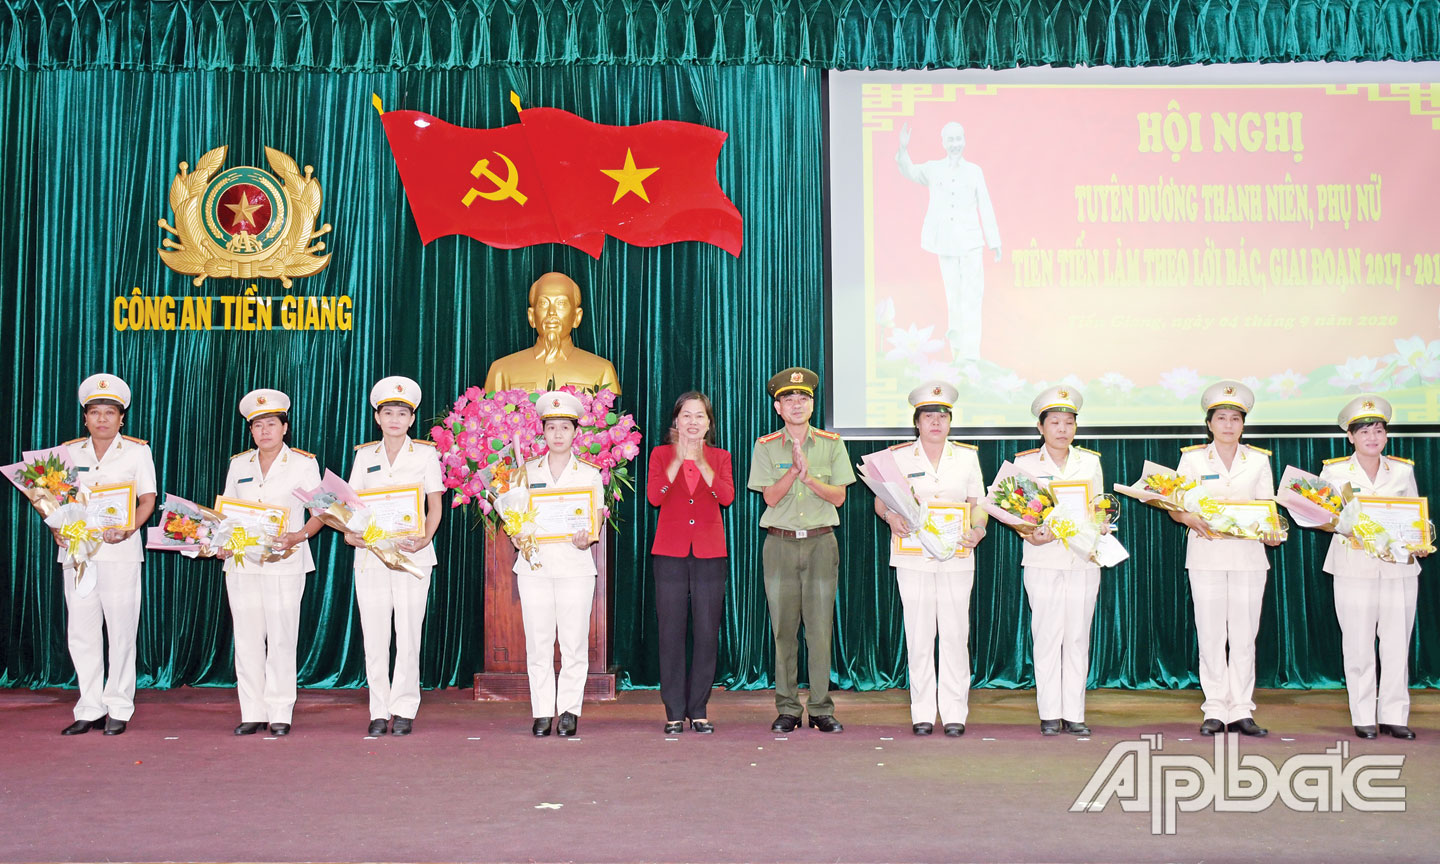 Thiếu tá Võ Thị Mỹ Thanh (thứ 4 từ trái qua) nhận Giải thưởng phụ nữ Công an Tiền Giang tiêu biểu.